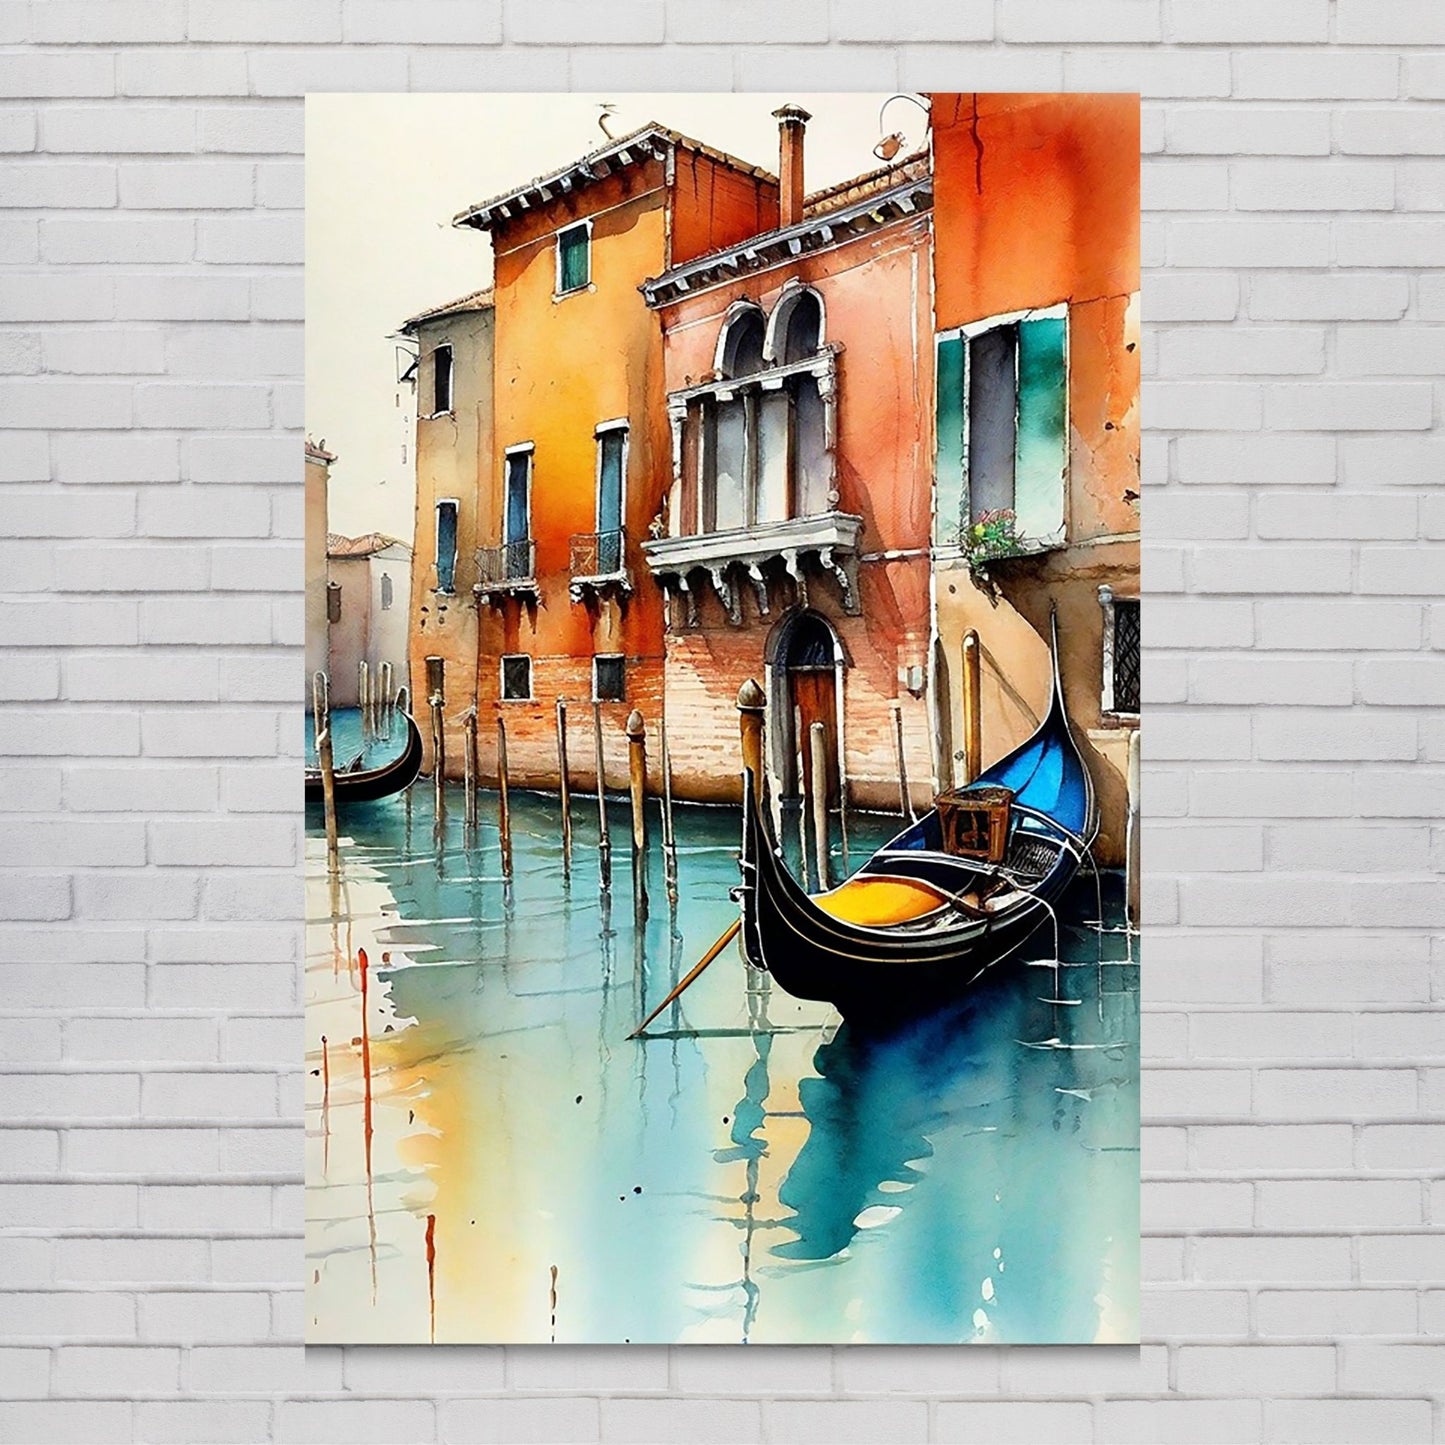 Med en fantastisk grafisk akvarell gjenskaper vi magien fra Venezia og de berømte gondolene som ligger på de pittoreske kanalene, omkranset av fargerike bygninger som speiler seg i det rolige vannet. Illustrasjonen viser motivet på lerret.